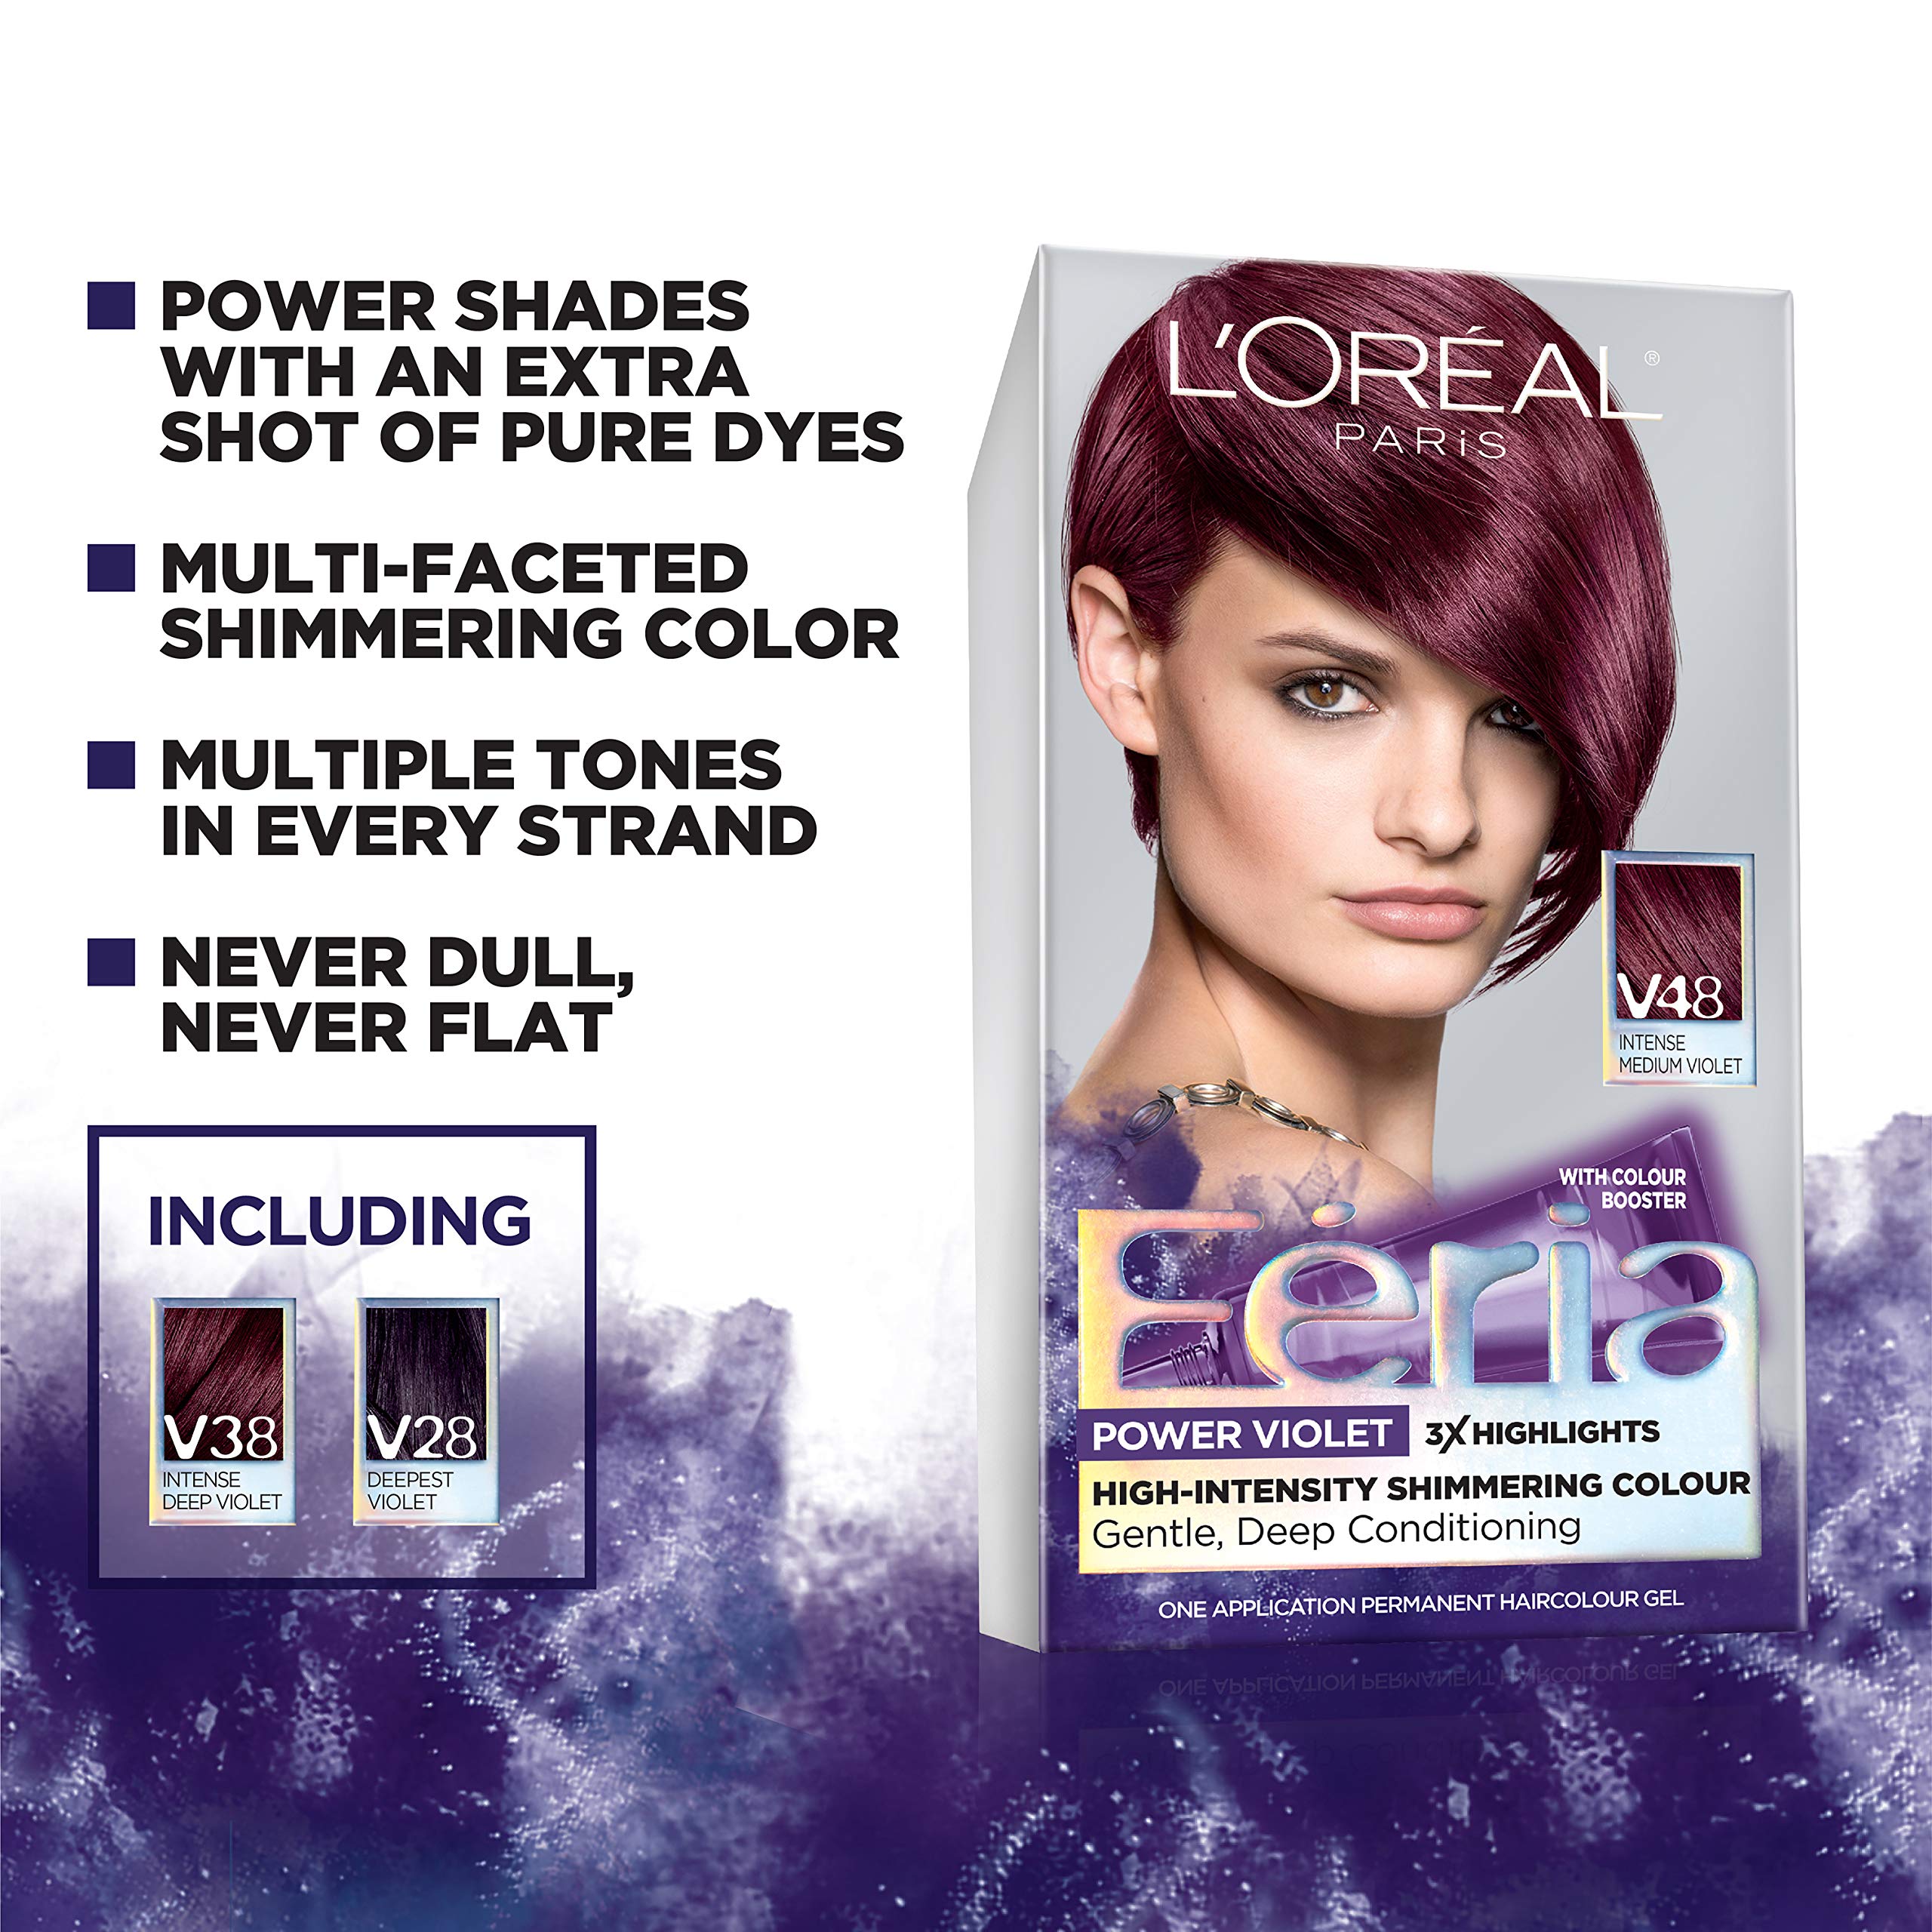 Mua L'Oreal Paris Feria Multi-Faceted Shimmering Permanent Hair Color Hair  Dye, V38 Violet Noir (Intense Deep Violet) trên Amazon Mỹ chính hãng 2023 |  Fado